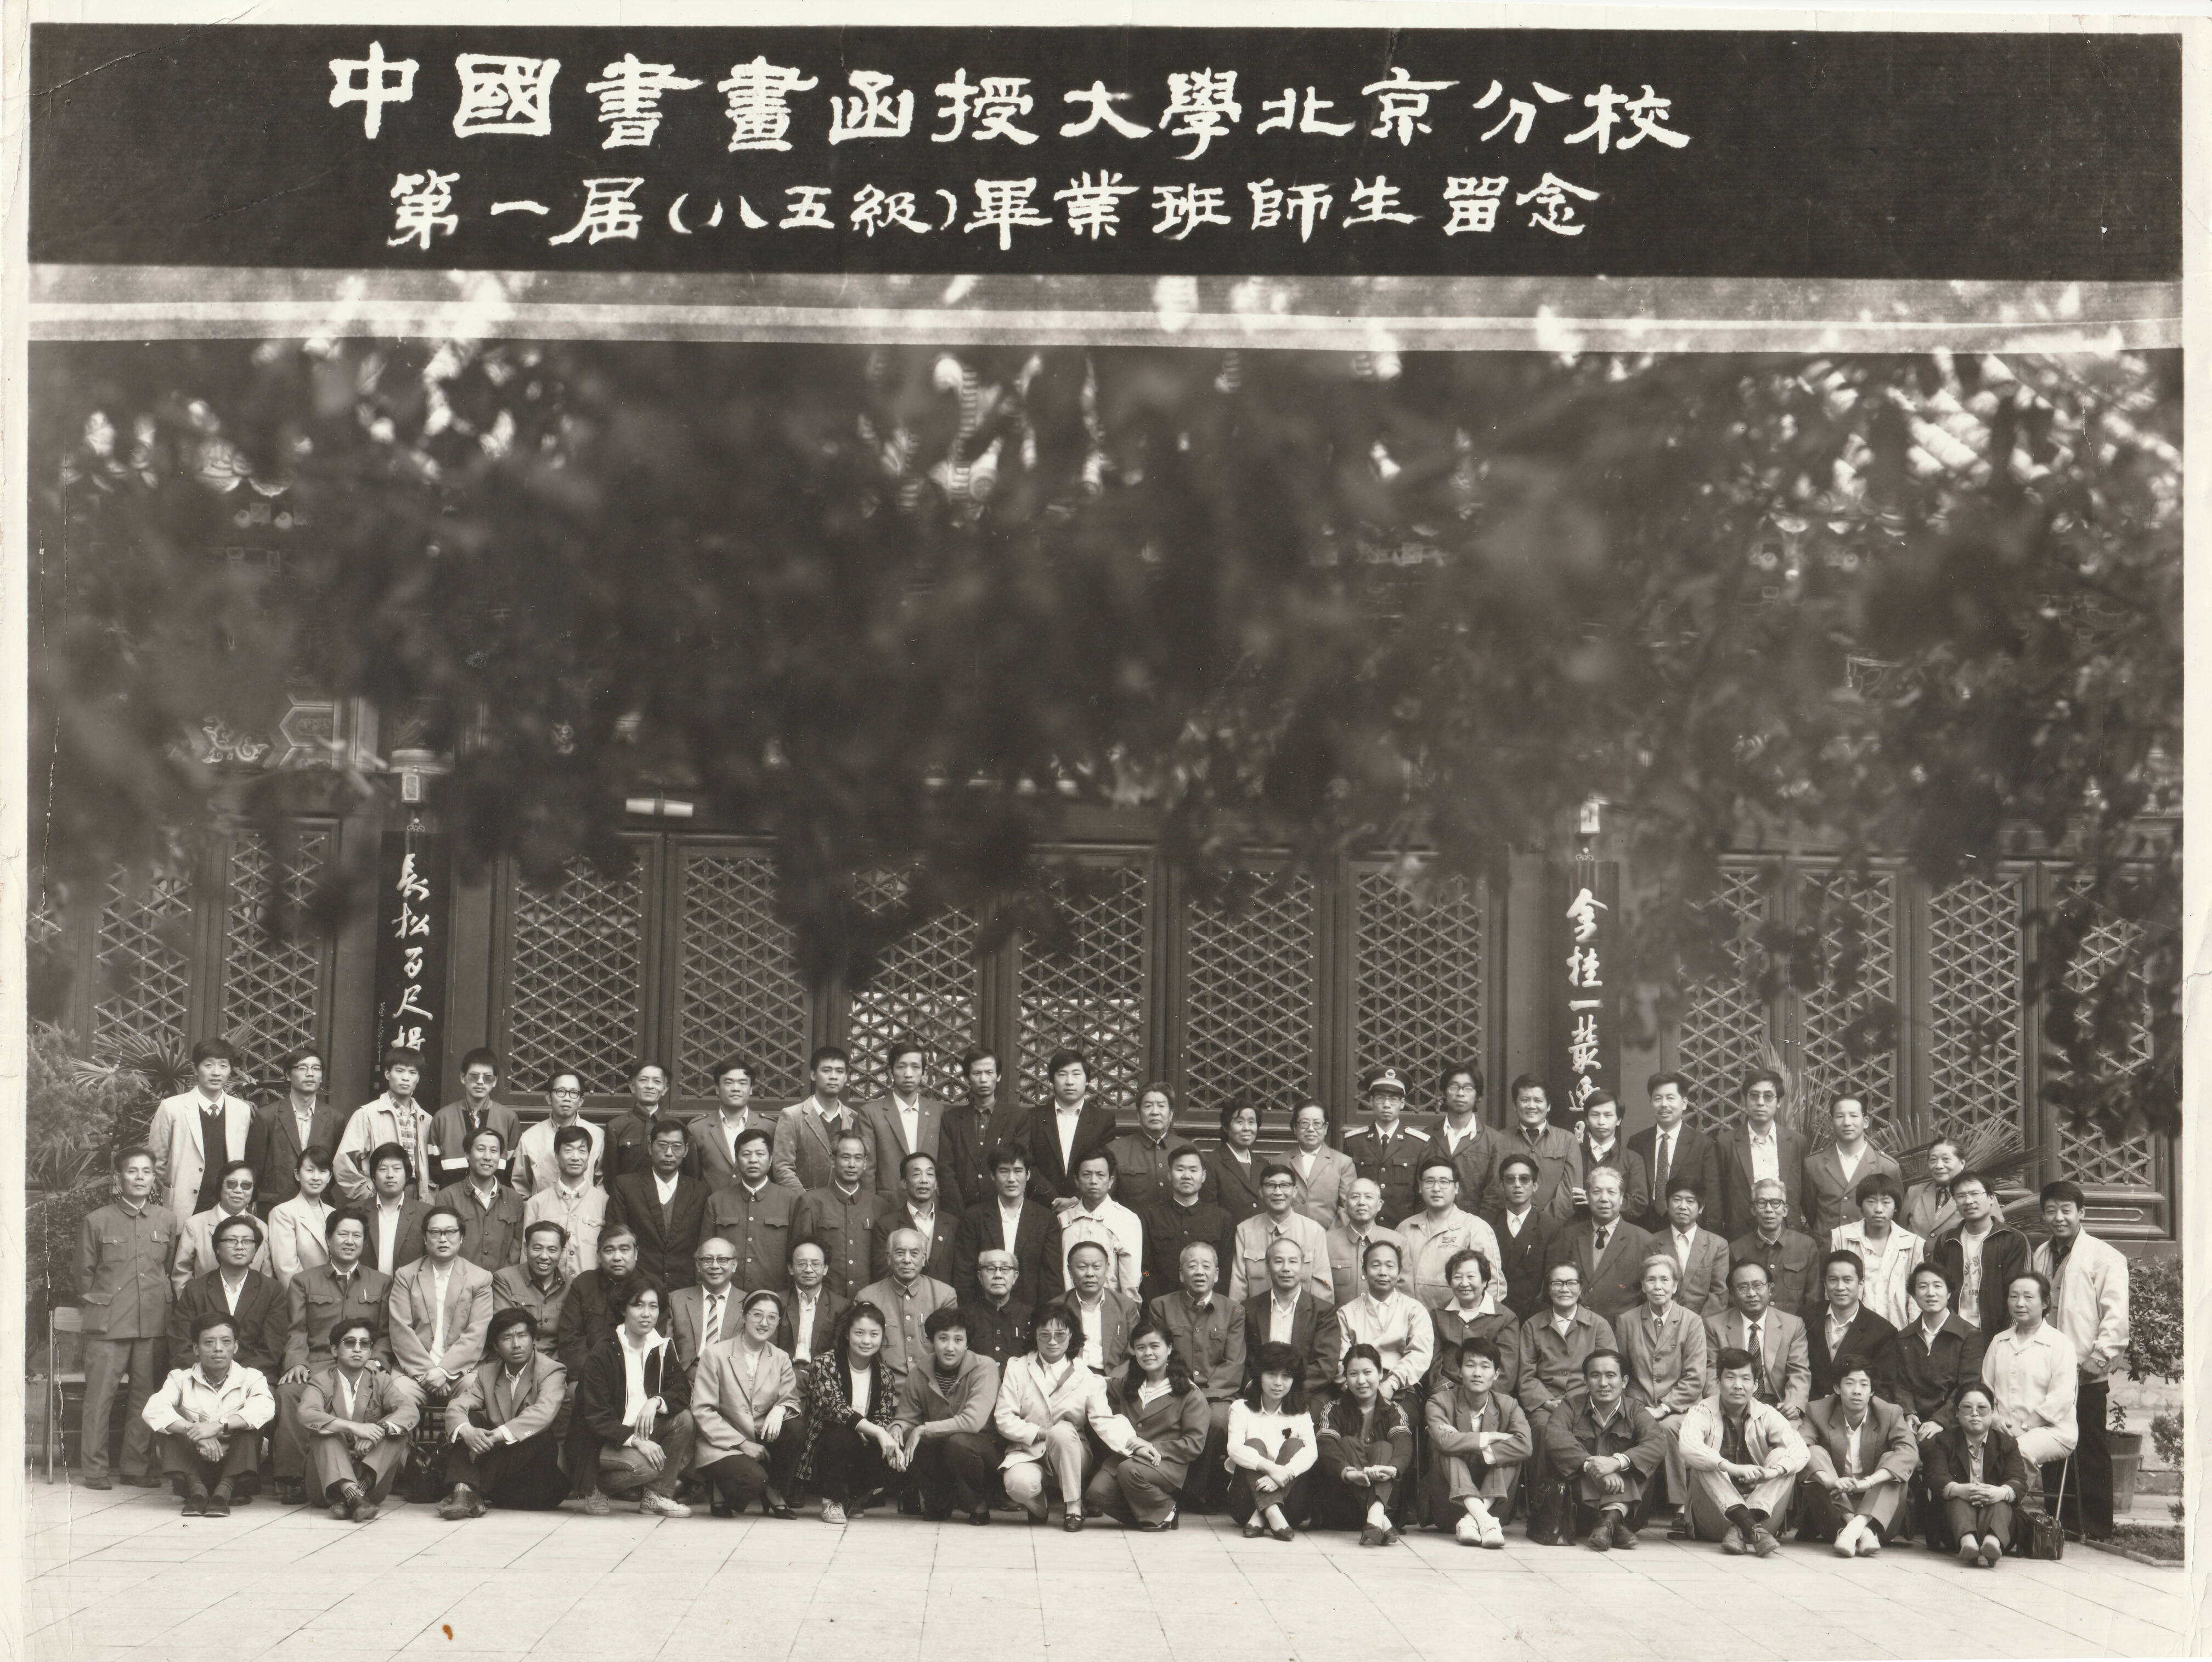 函大北京分校85级毕业班照片